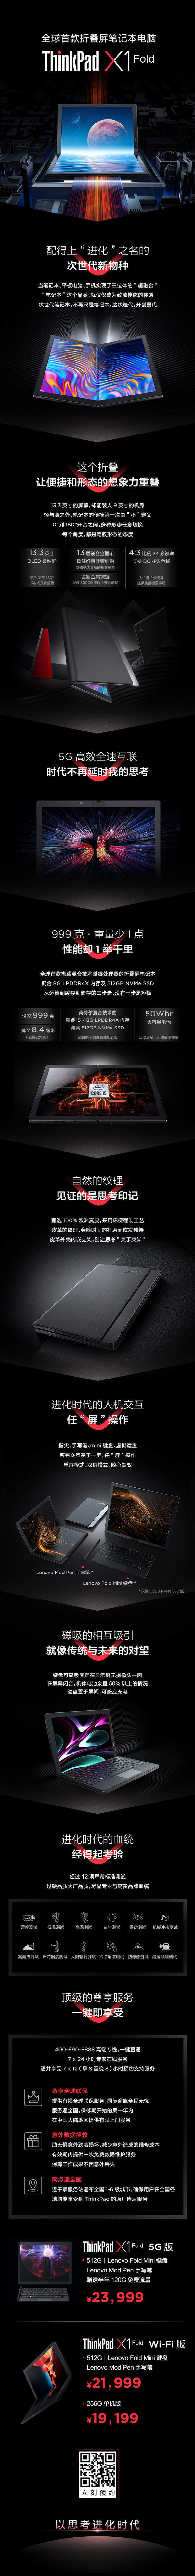 联想ThinkPad X1 Fold正式发布:全球首款折叠屏电脑